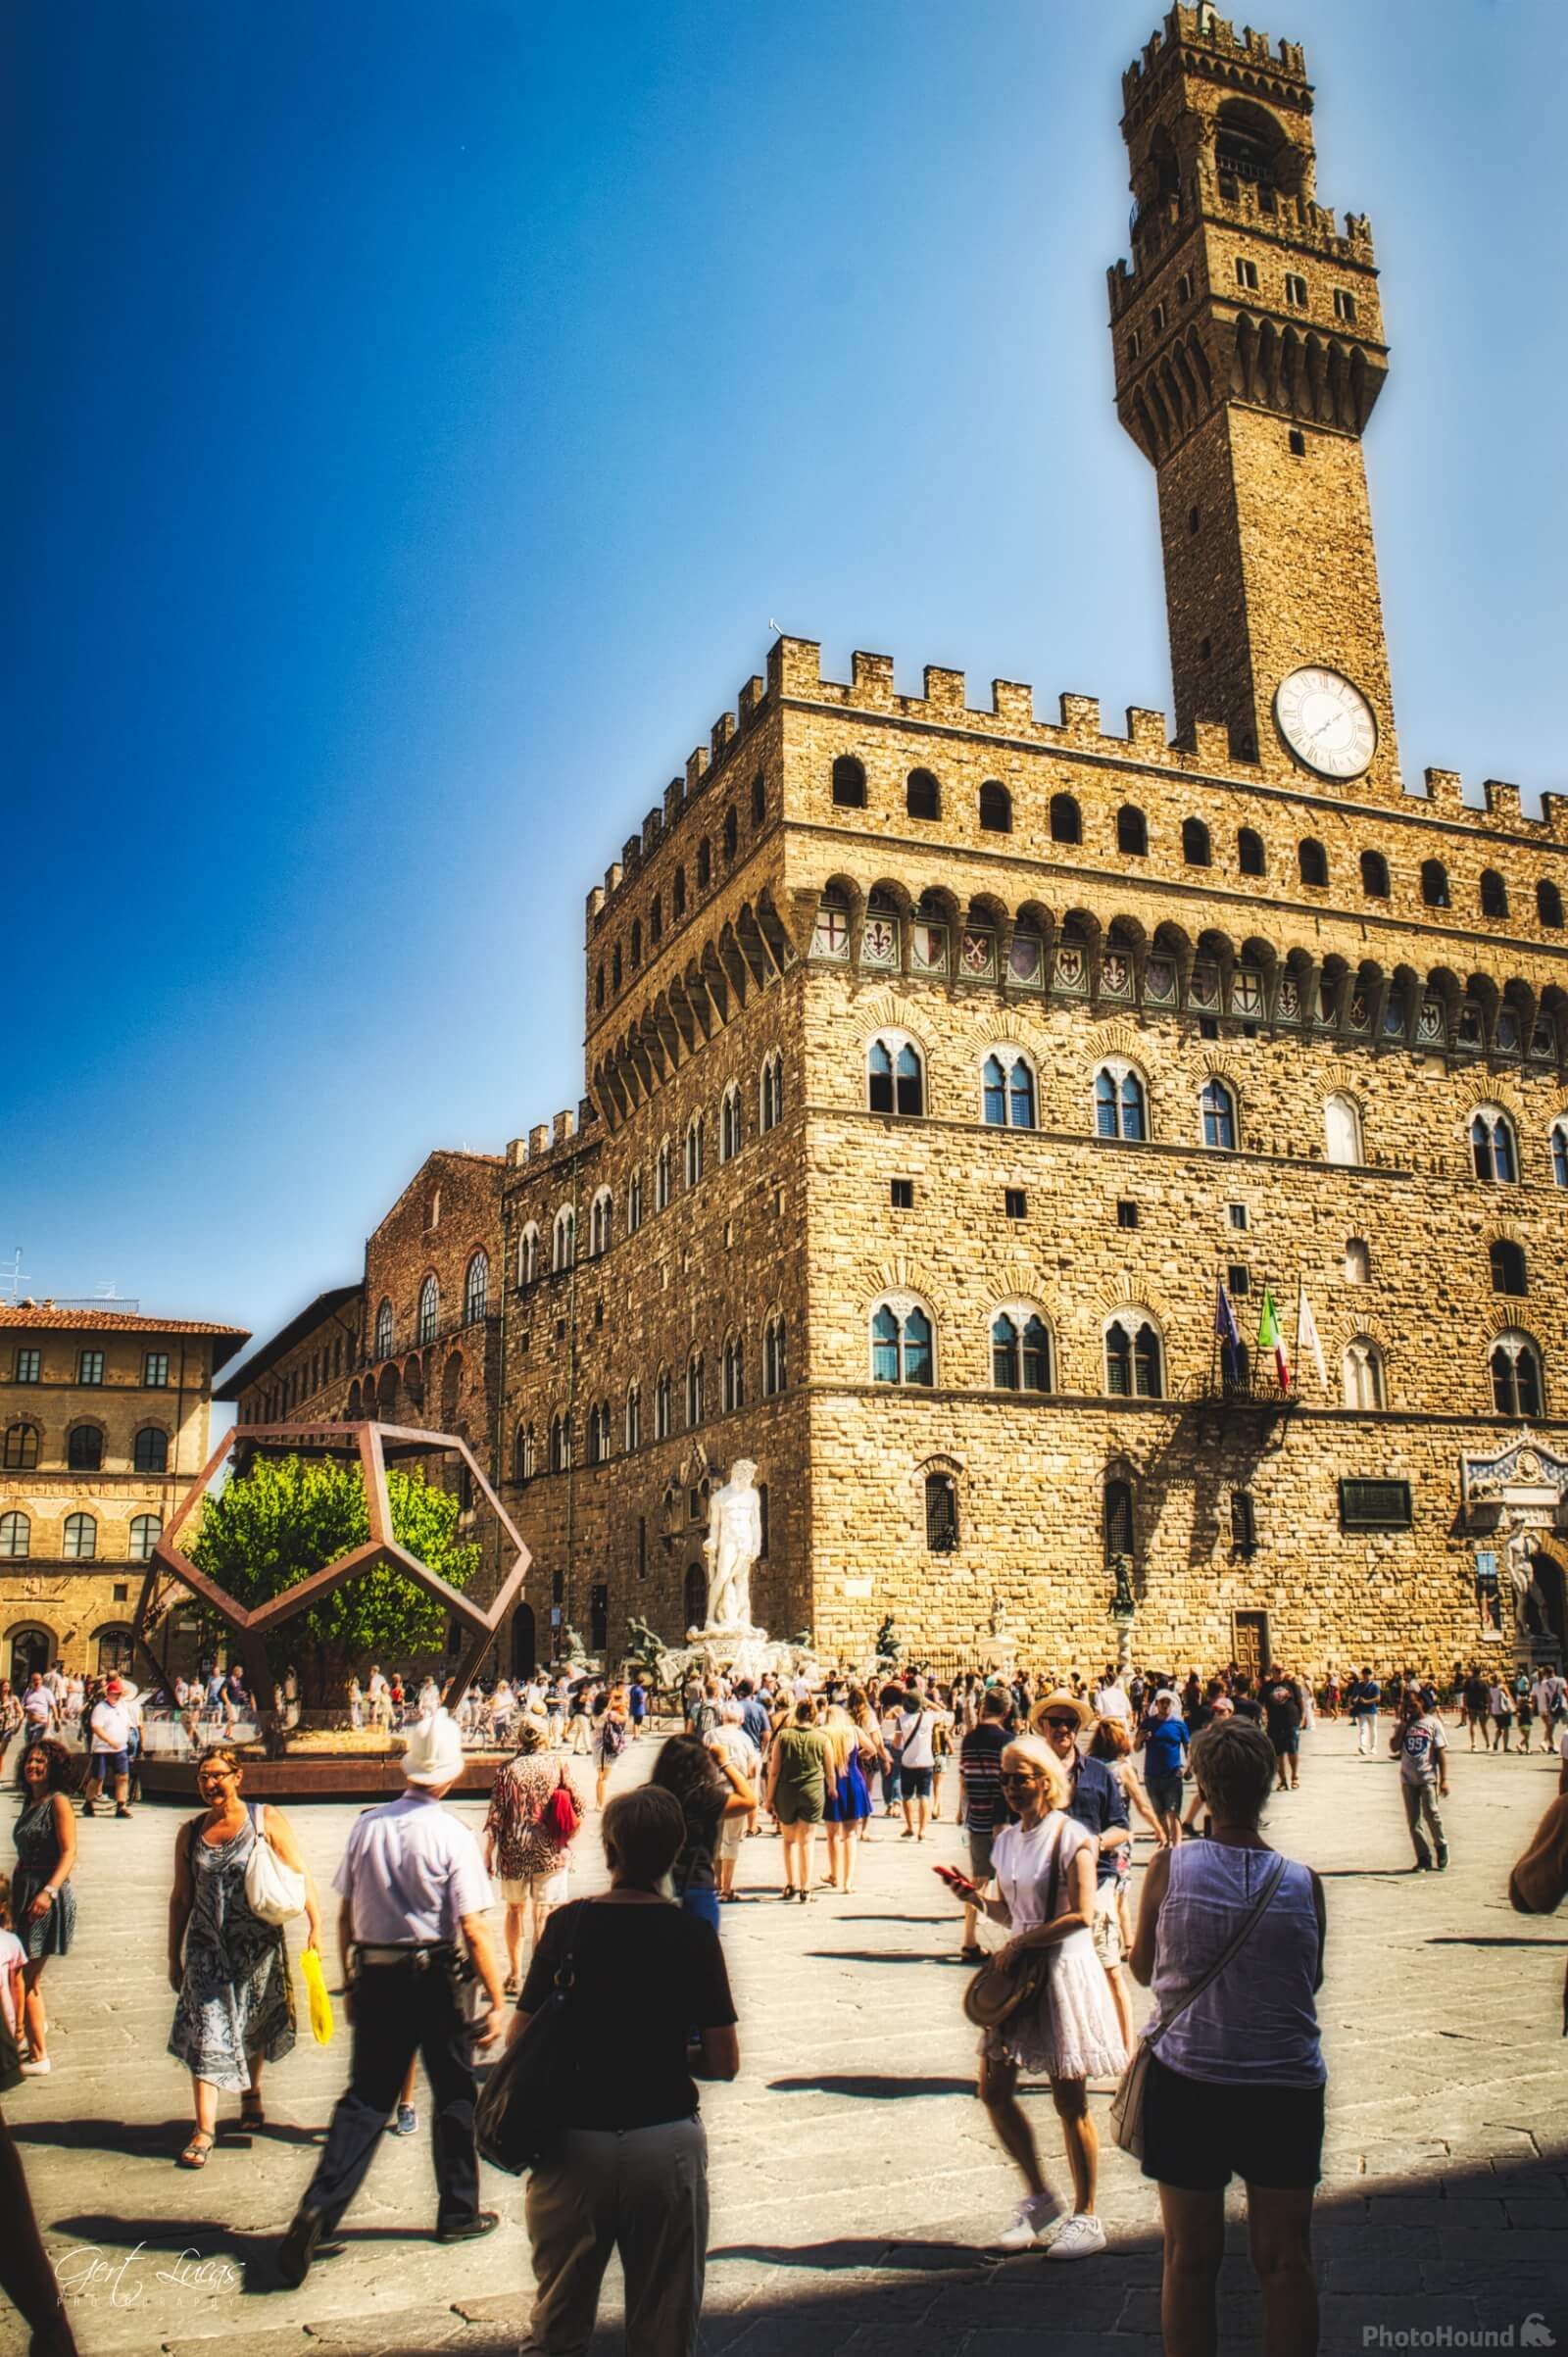 Image of Piazza della Signore & Palazzo Vecchio, Firenze by Gert Lucas